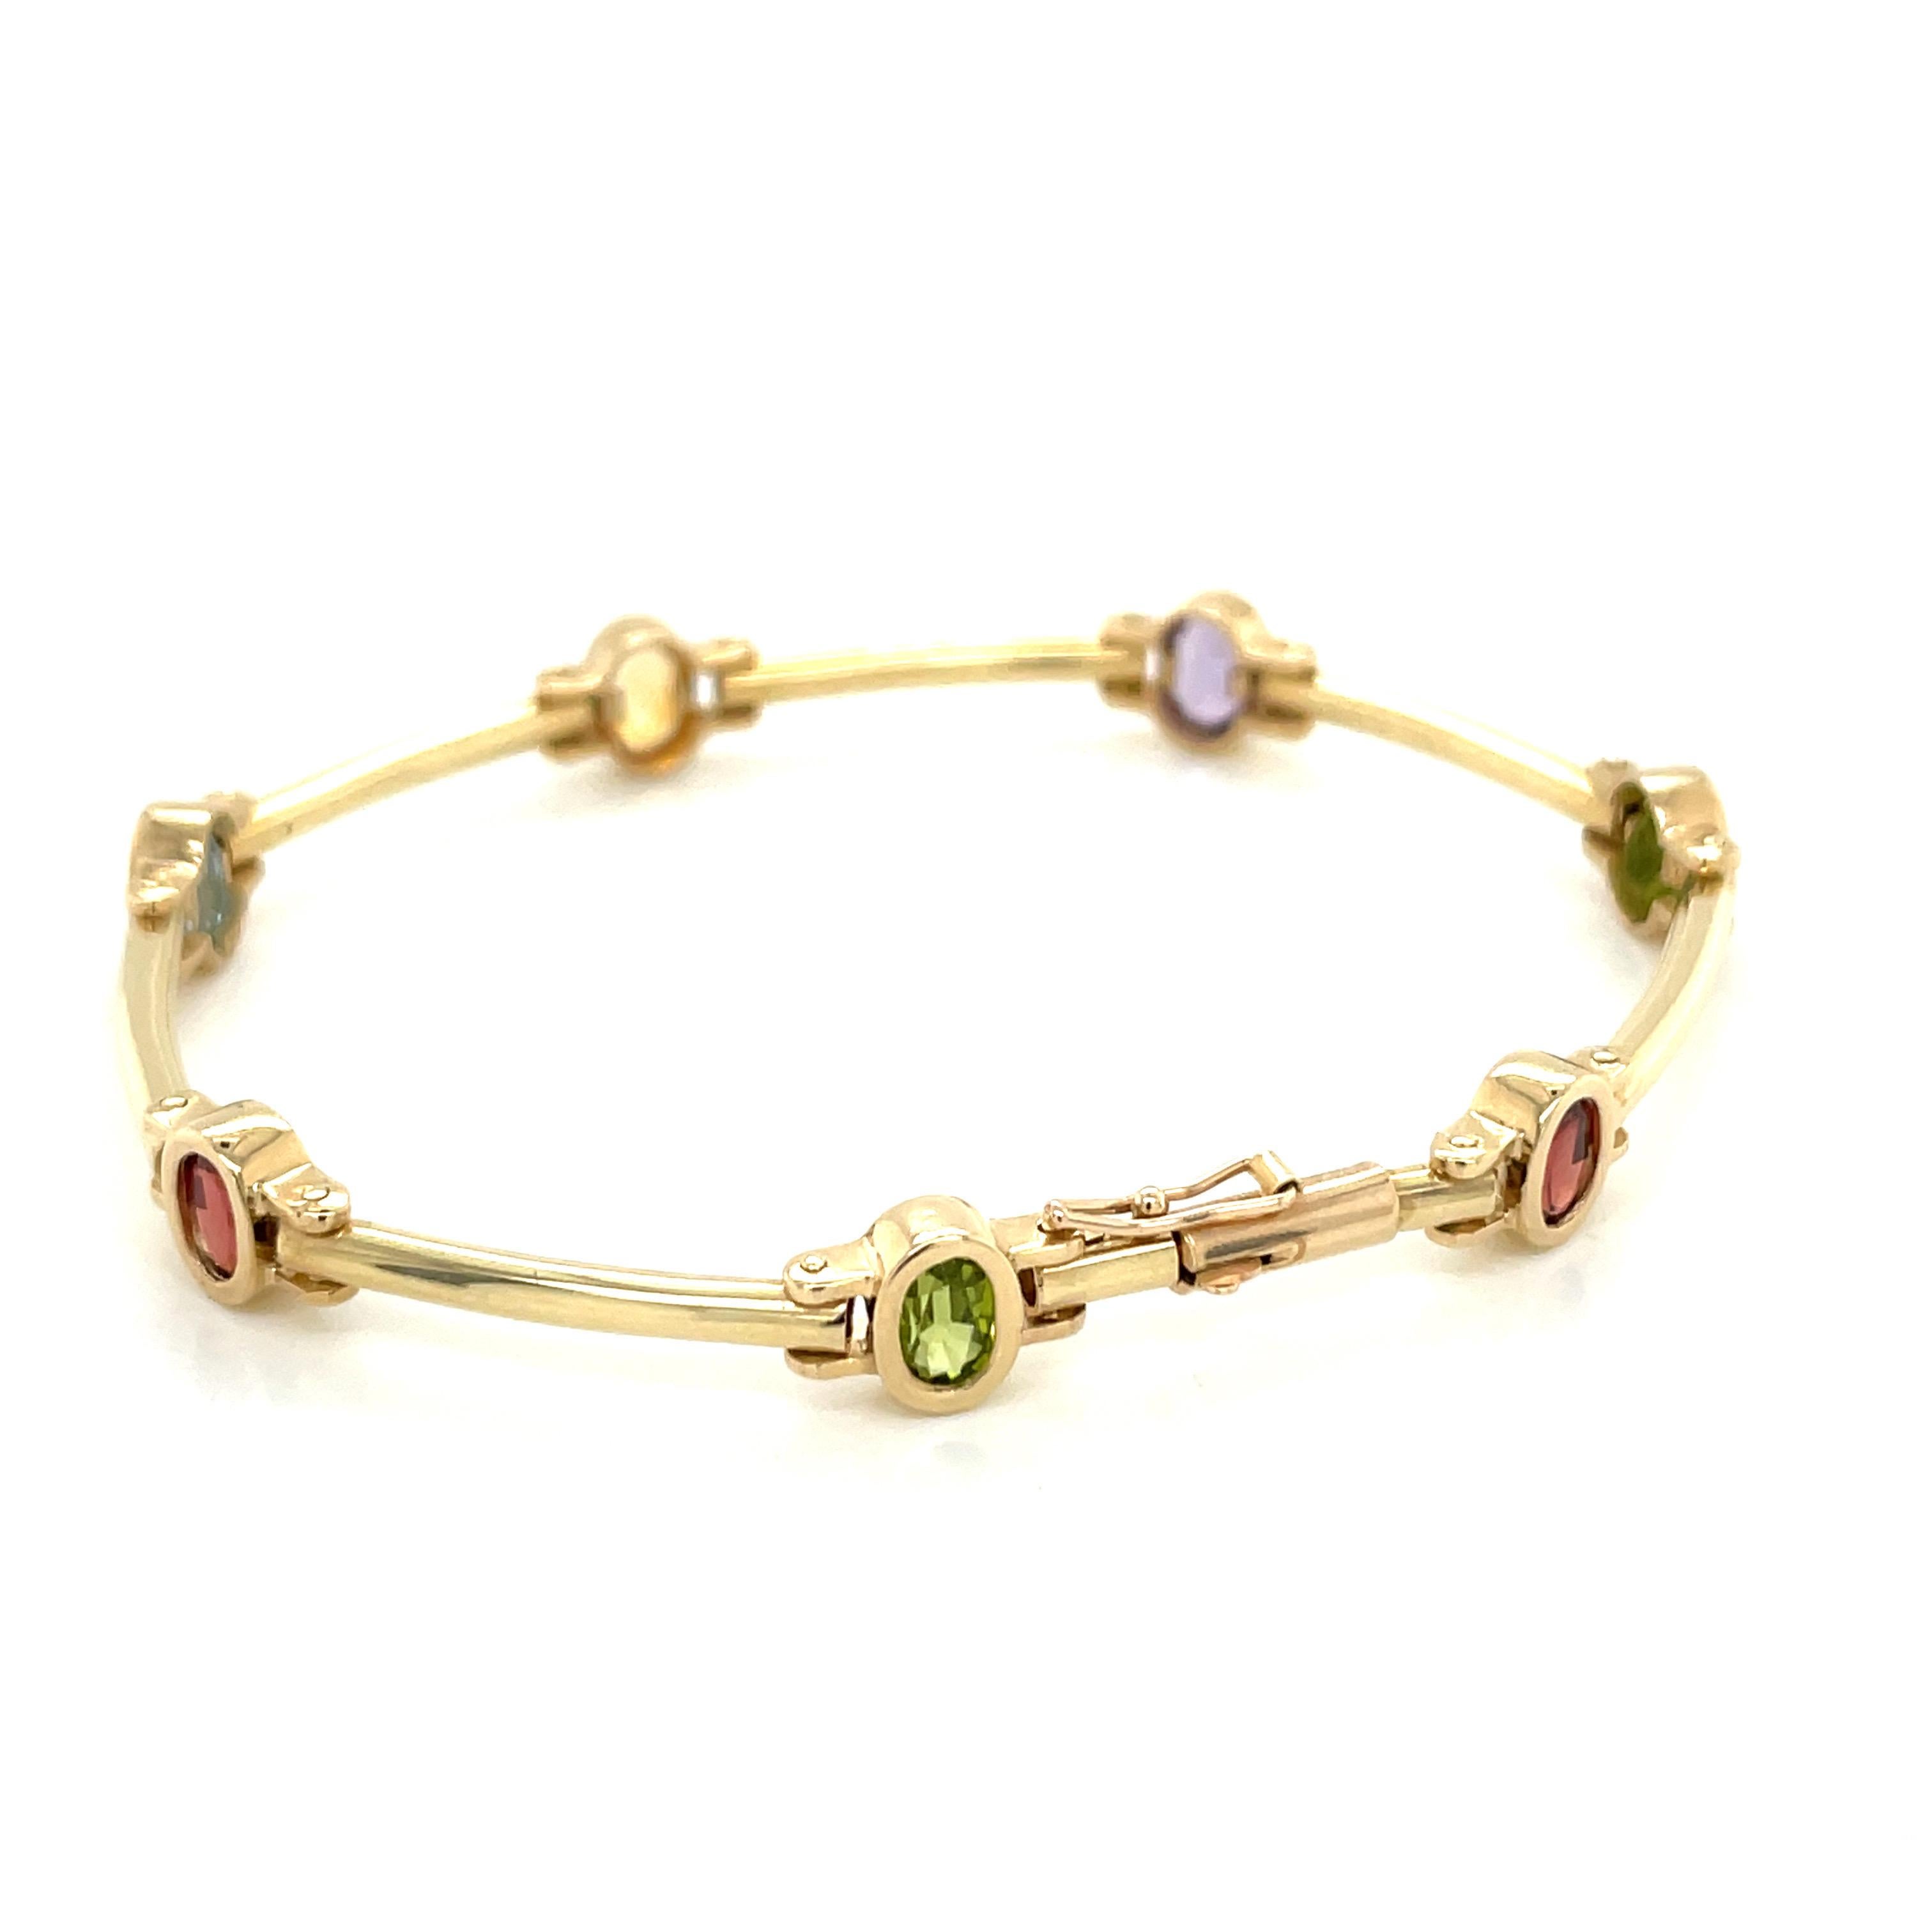 Vintage Mulit Color Semi Precious Gemstone Bezel and Bar Link Bracelet - Das Armband enthält 7 ovale Edelsteine, die 6 x 4 mm messen. Die Reihenfolge der Edelsteine ist Granat, Peridot, Amethyst, Citrin, Blautopas, Granat und Peridot. Das Armband